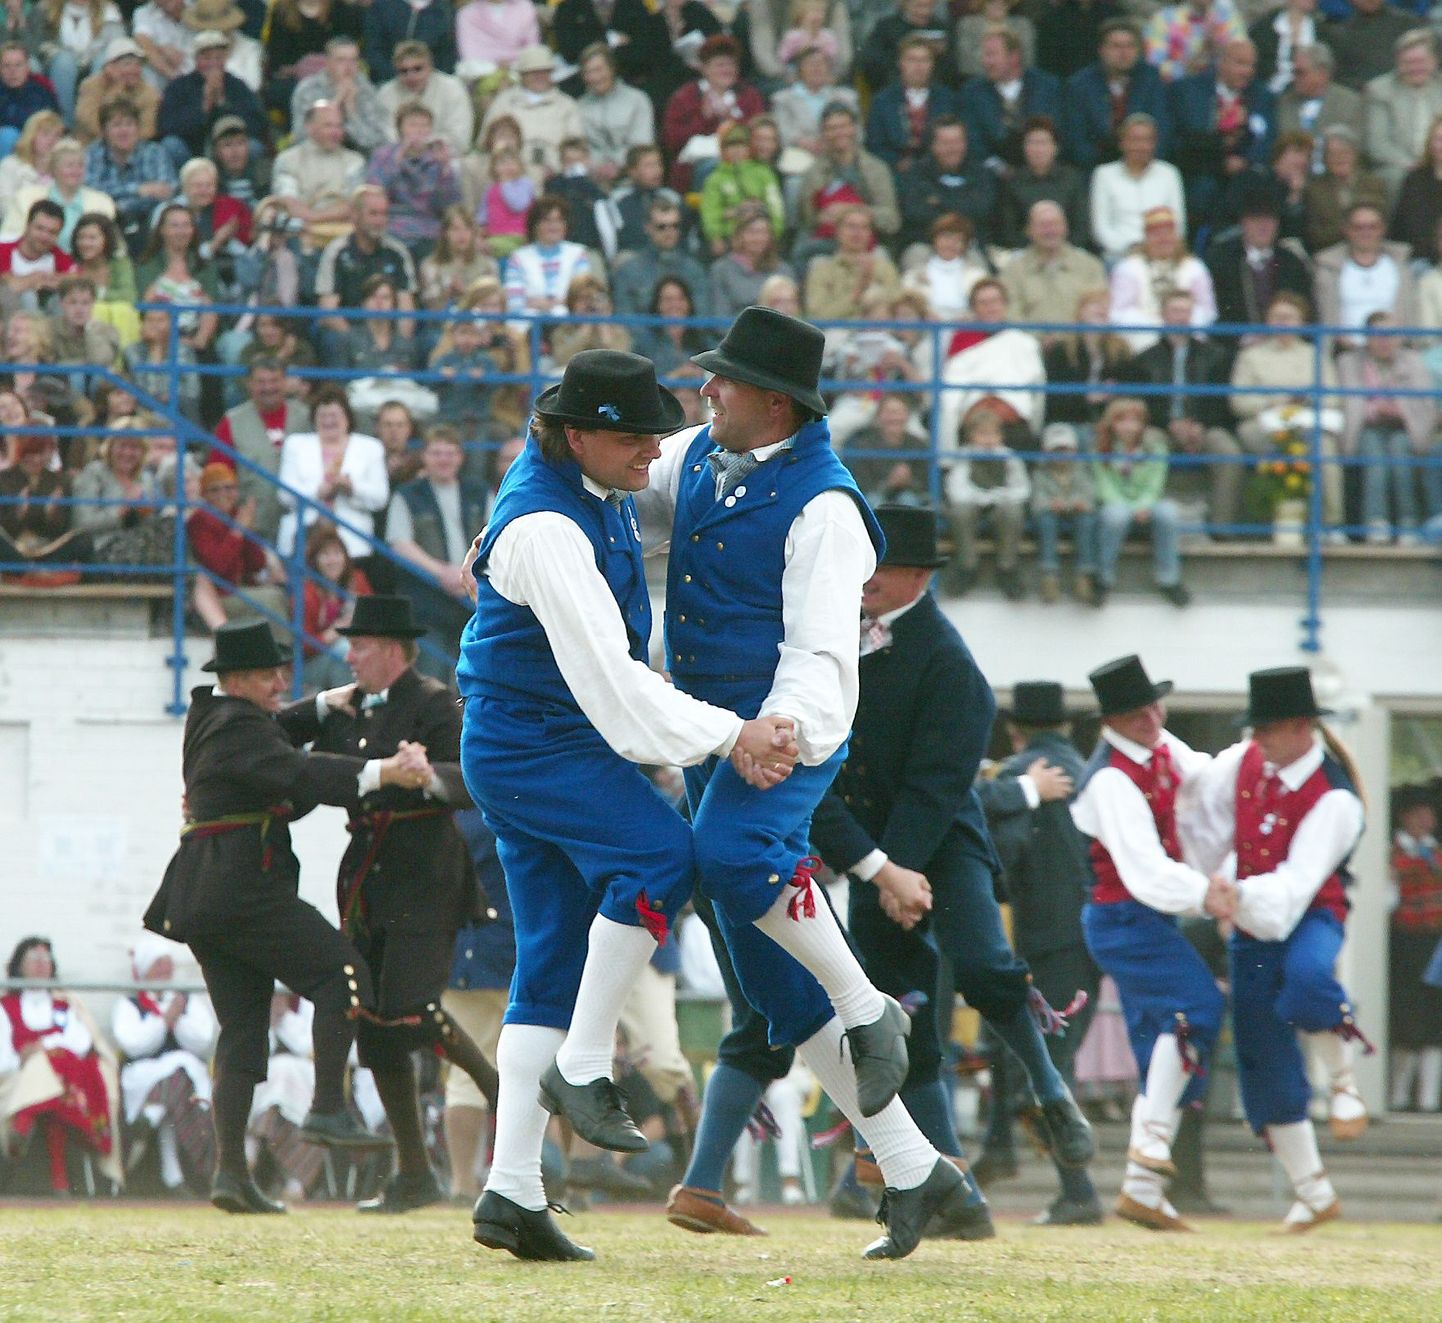 Fotomeenutus esimesest meeste tantsupeost Rakvere staadionil 2006. aastal.